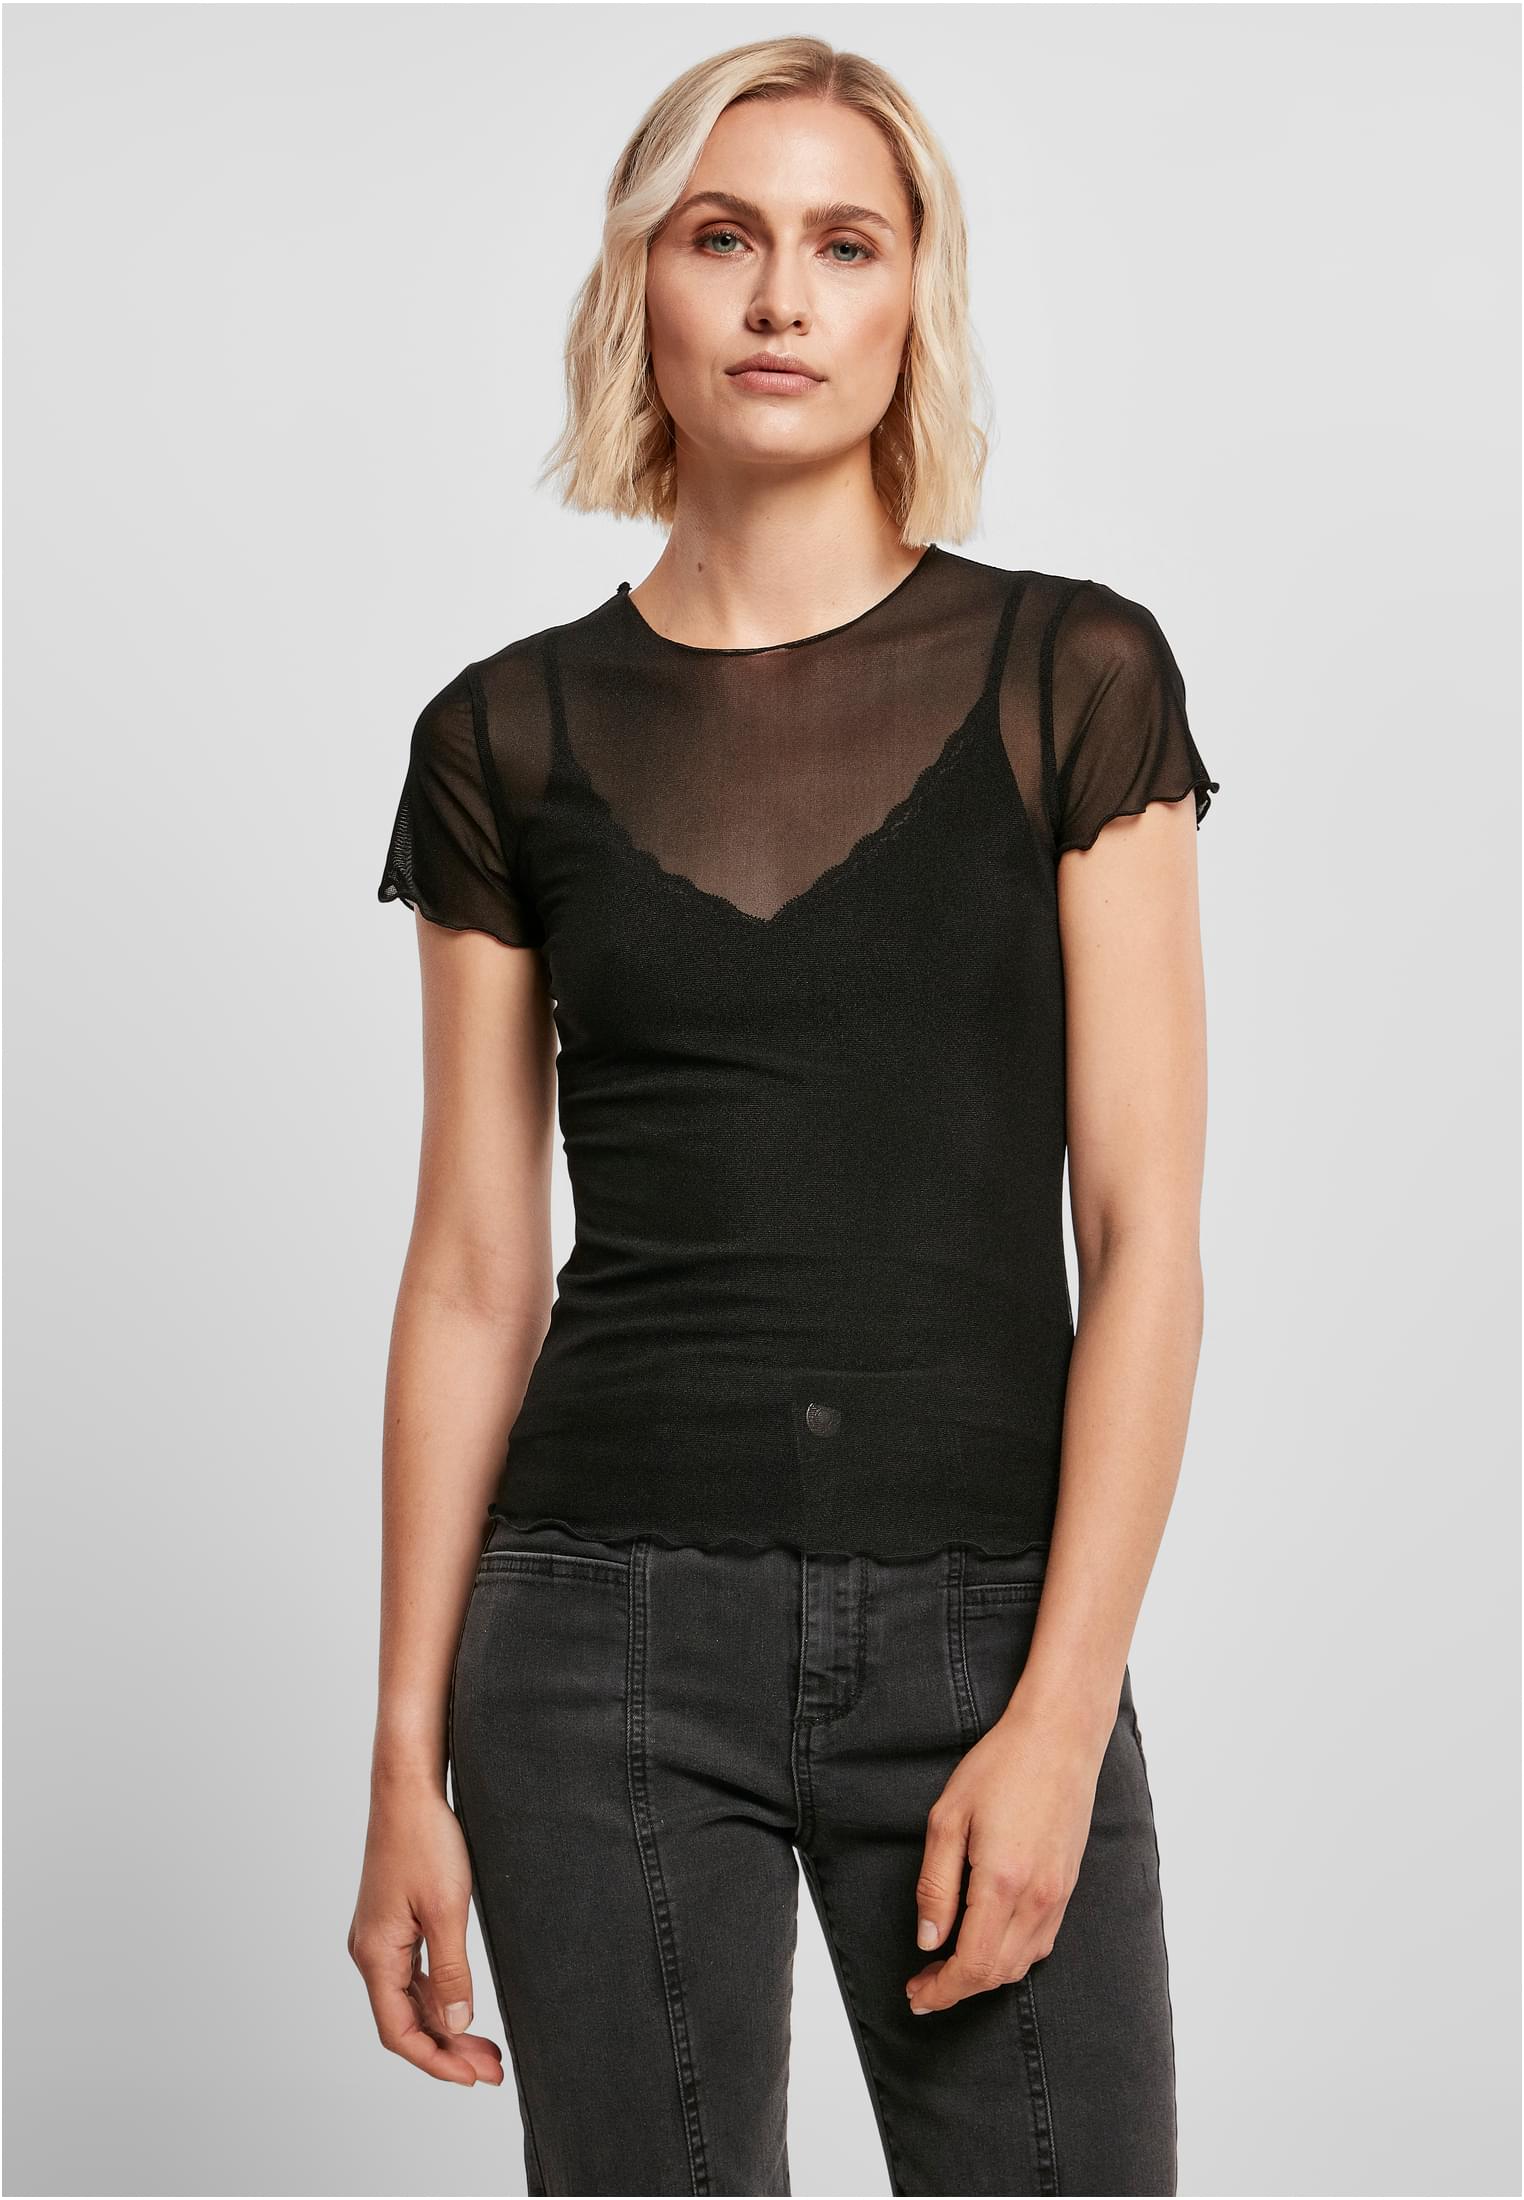 Women's fishnet T-shirt black